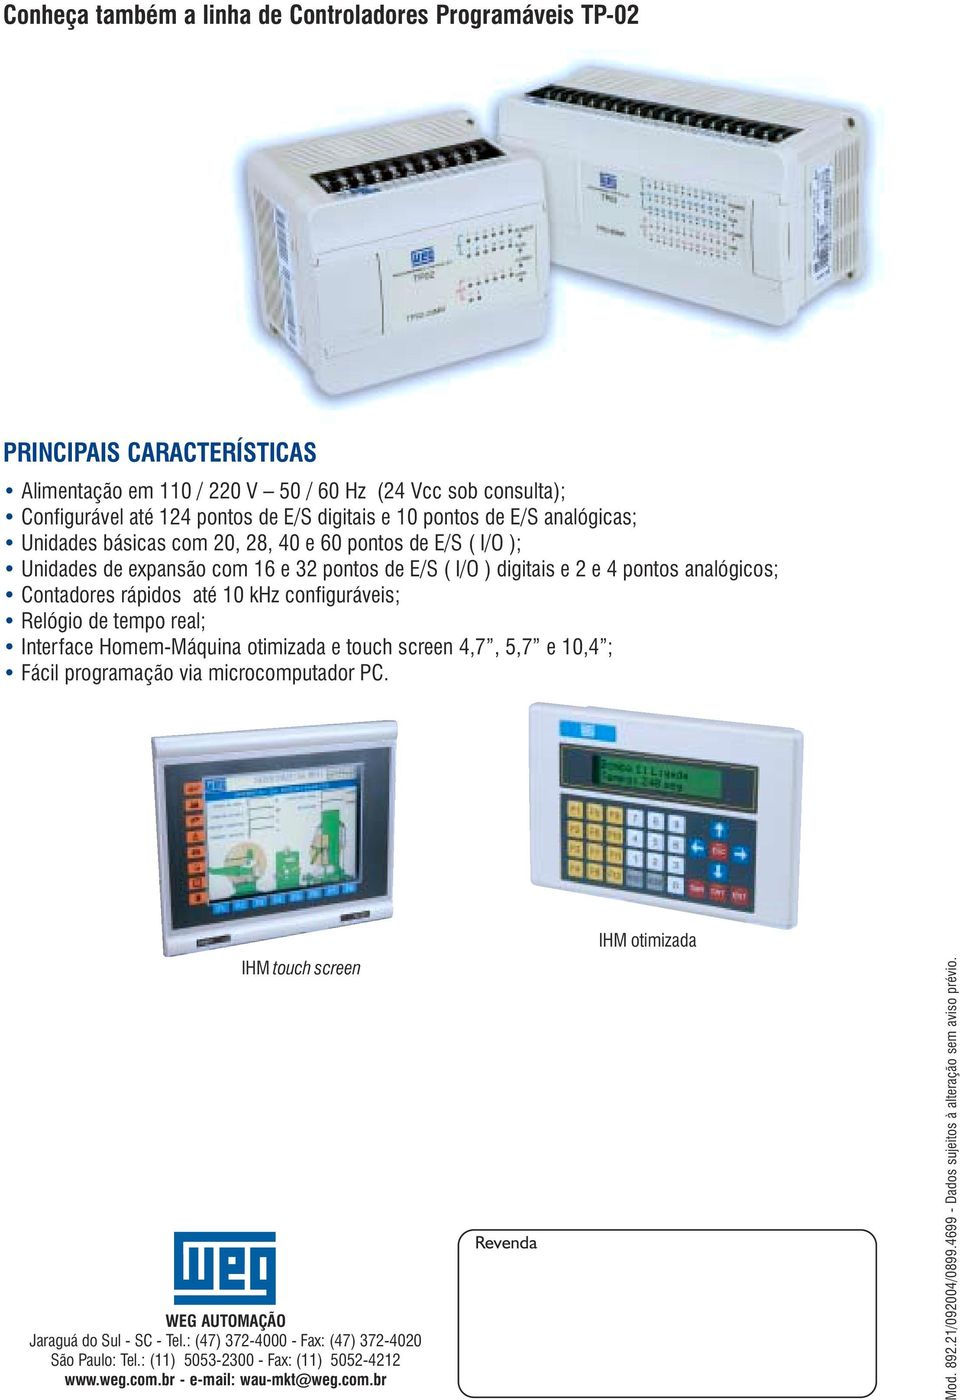 10 khz configuráveis; Relógio de tempo real; Interface Homem-Máquina otimizada e touch screen 4,7, 5,7 e 10,4 ; ácil programação via microcomputador PC.